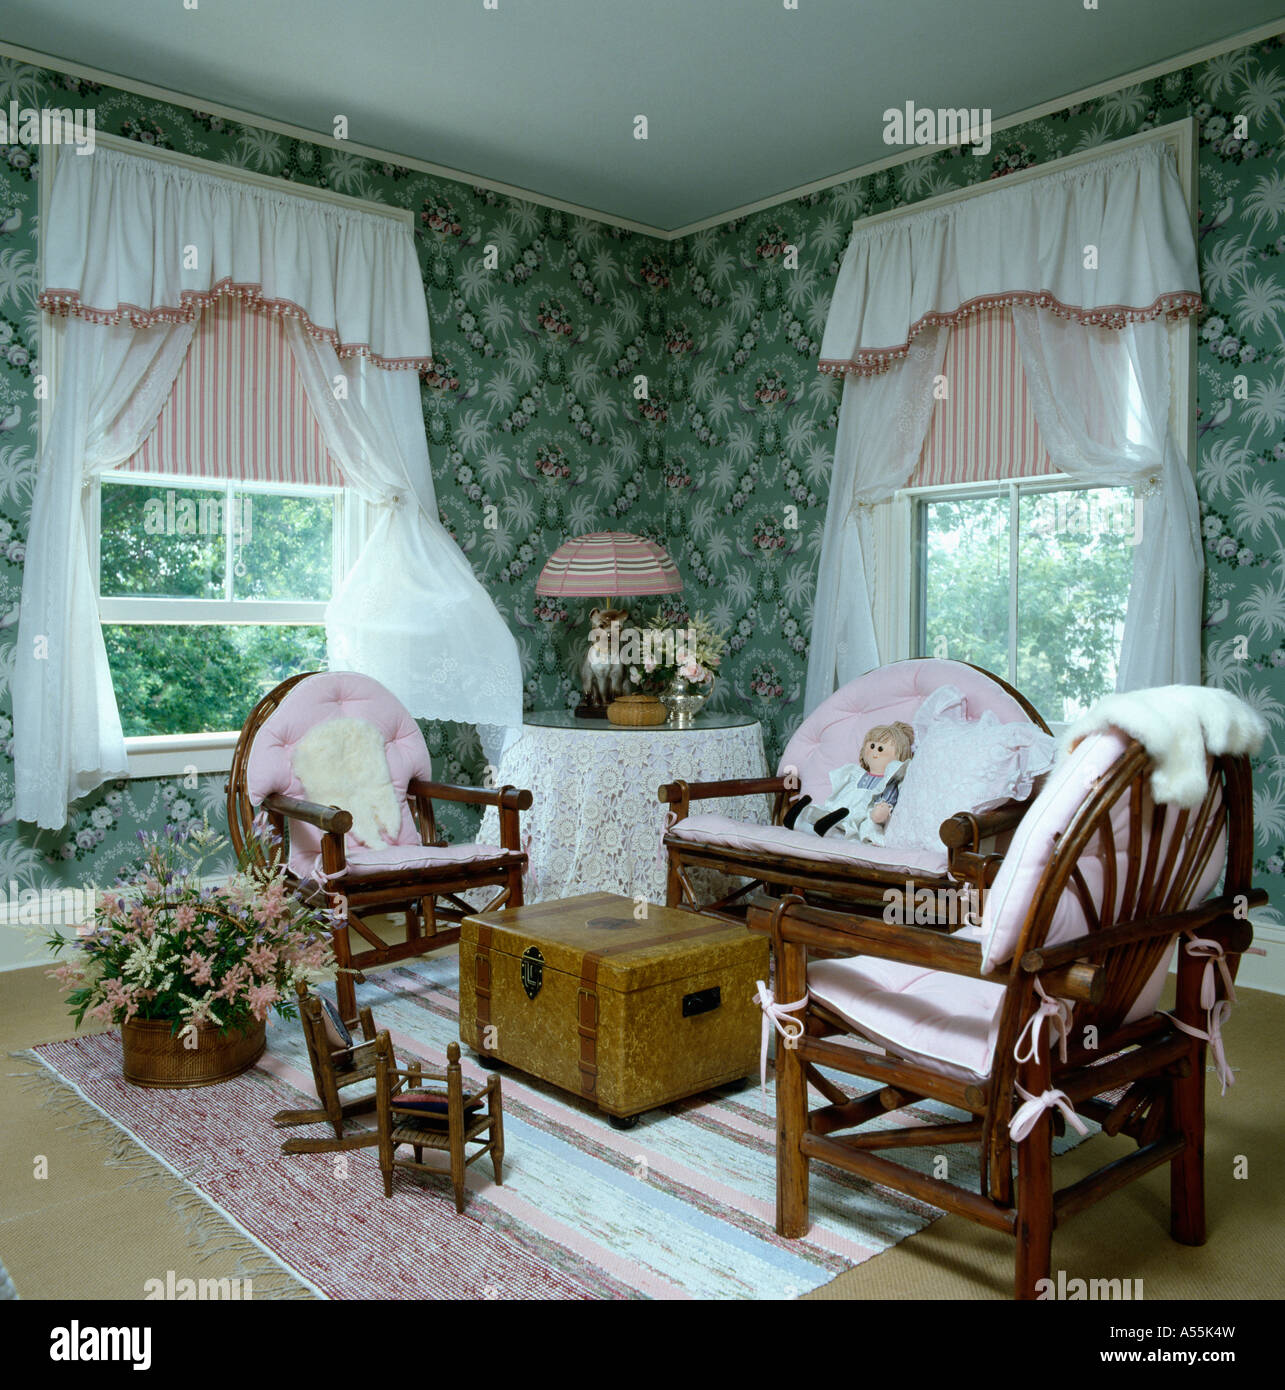 https://c8.alamy.com/compes/a55k4w/ochenta-salon-con-verde-de-empapelado-con-motivos-florales-y-muebles-de-cana-con-cortinas-blancas-y-persianas-rosa-a55k4w.jpg